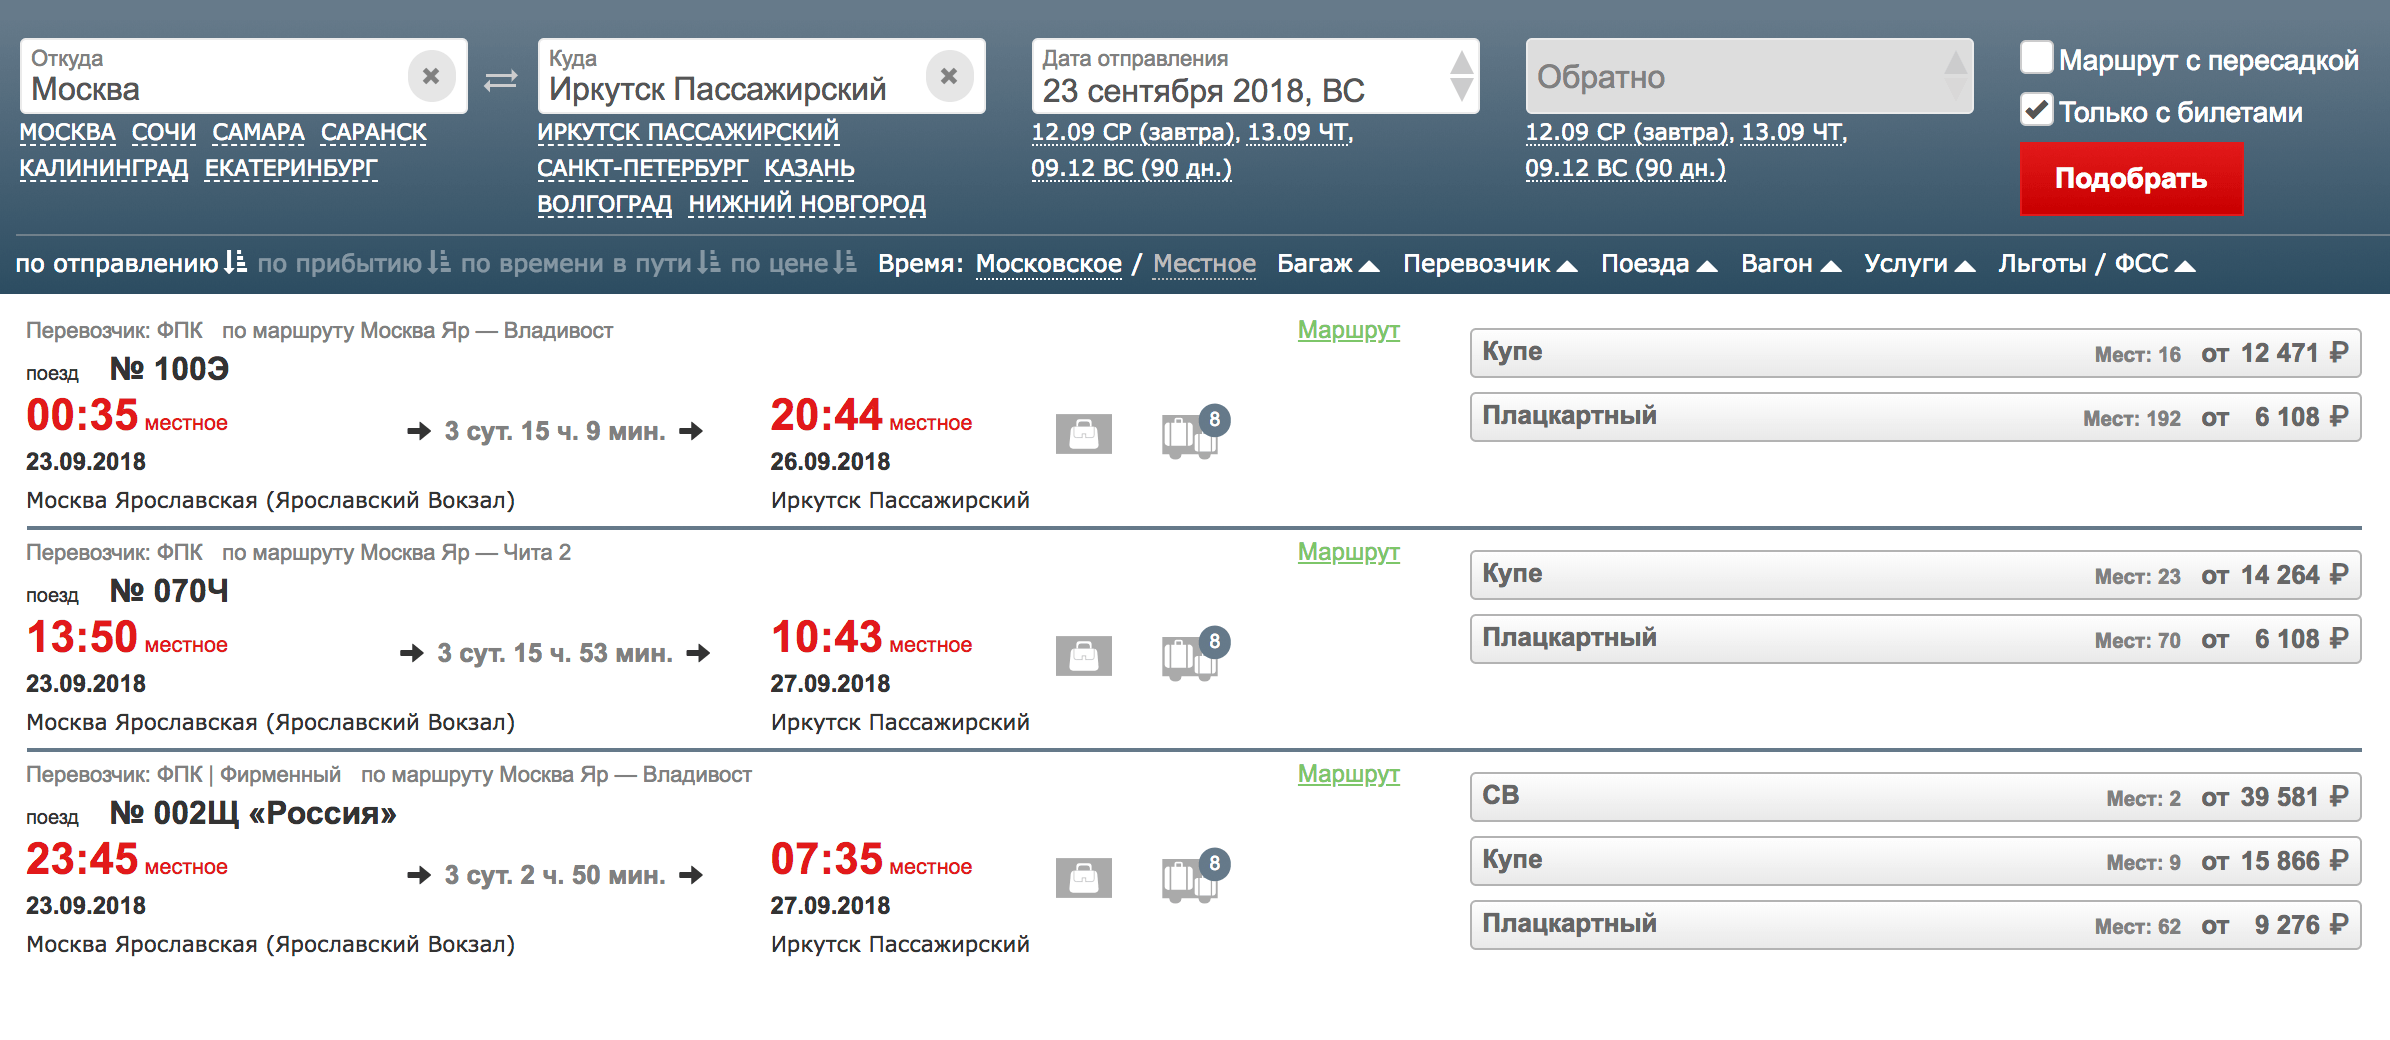 Как добраться до байкала из москвы на самолете: сколько лететь прямым рейсом